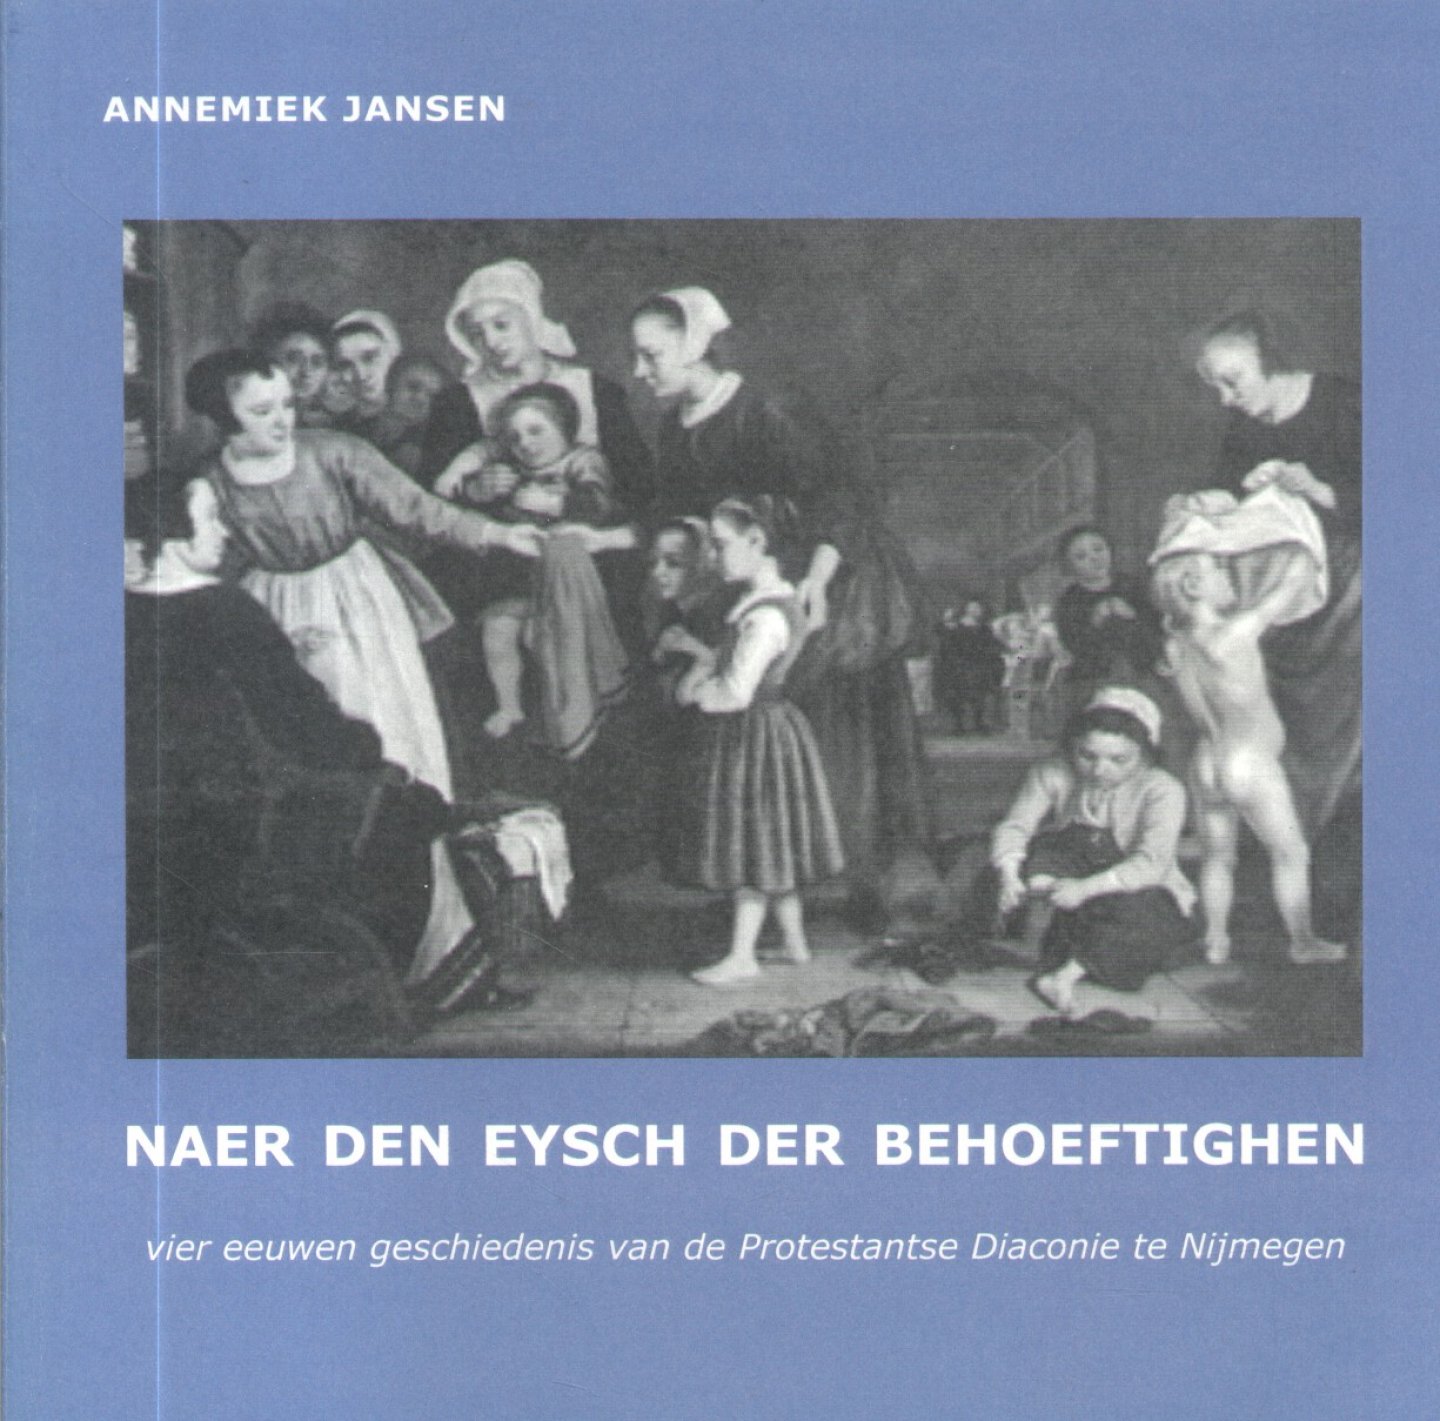 Jansen, Annemiek - Naer den eysch der behoeftighen (Vier eeuwen geschiedenis van de Protestantse Diaconie te Nijmegen)